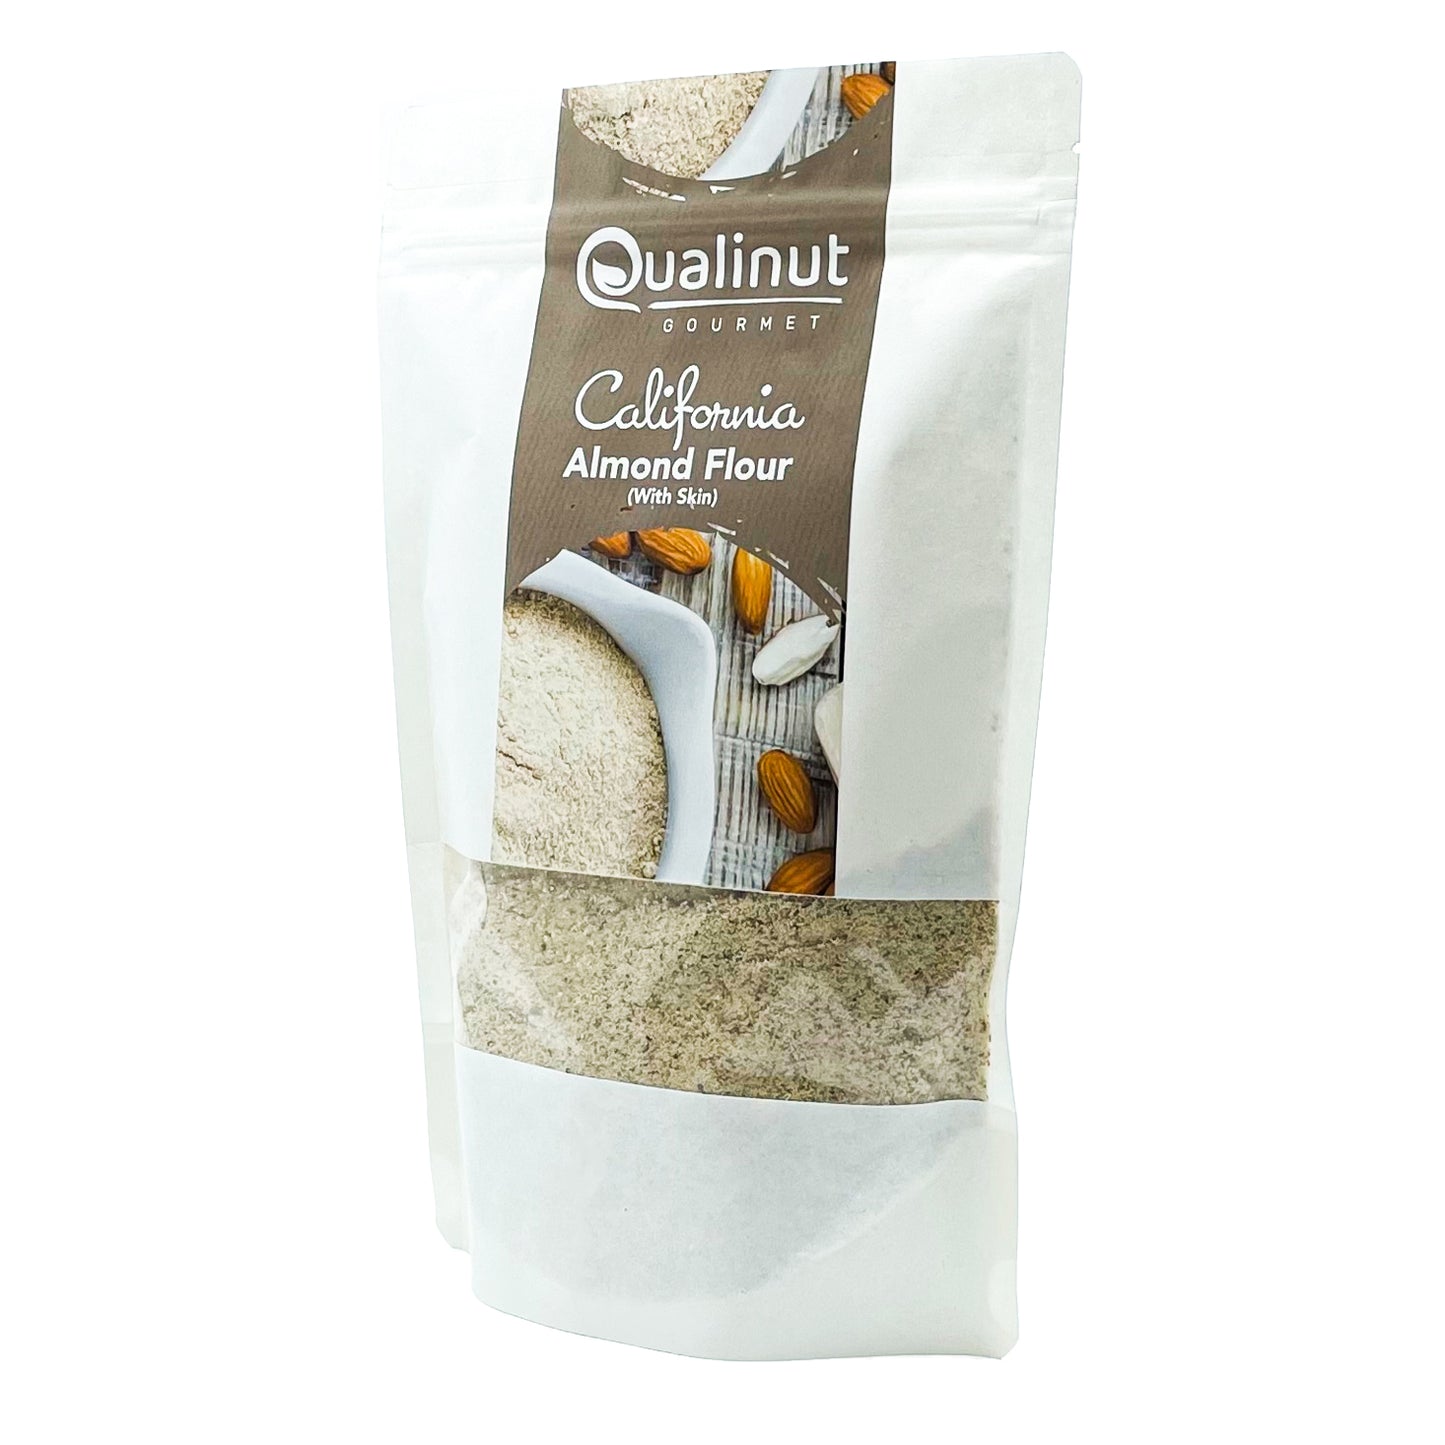 
                  
                    Oats Flour (1 Kg)
                  
                